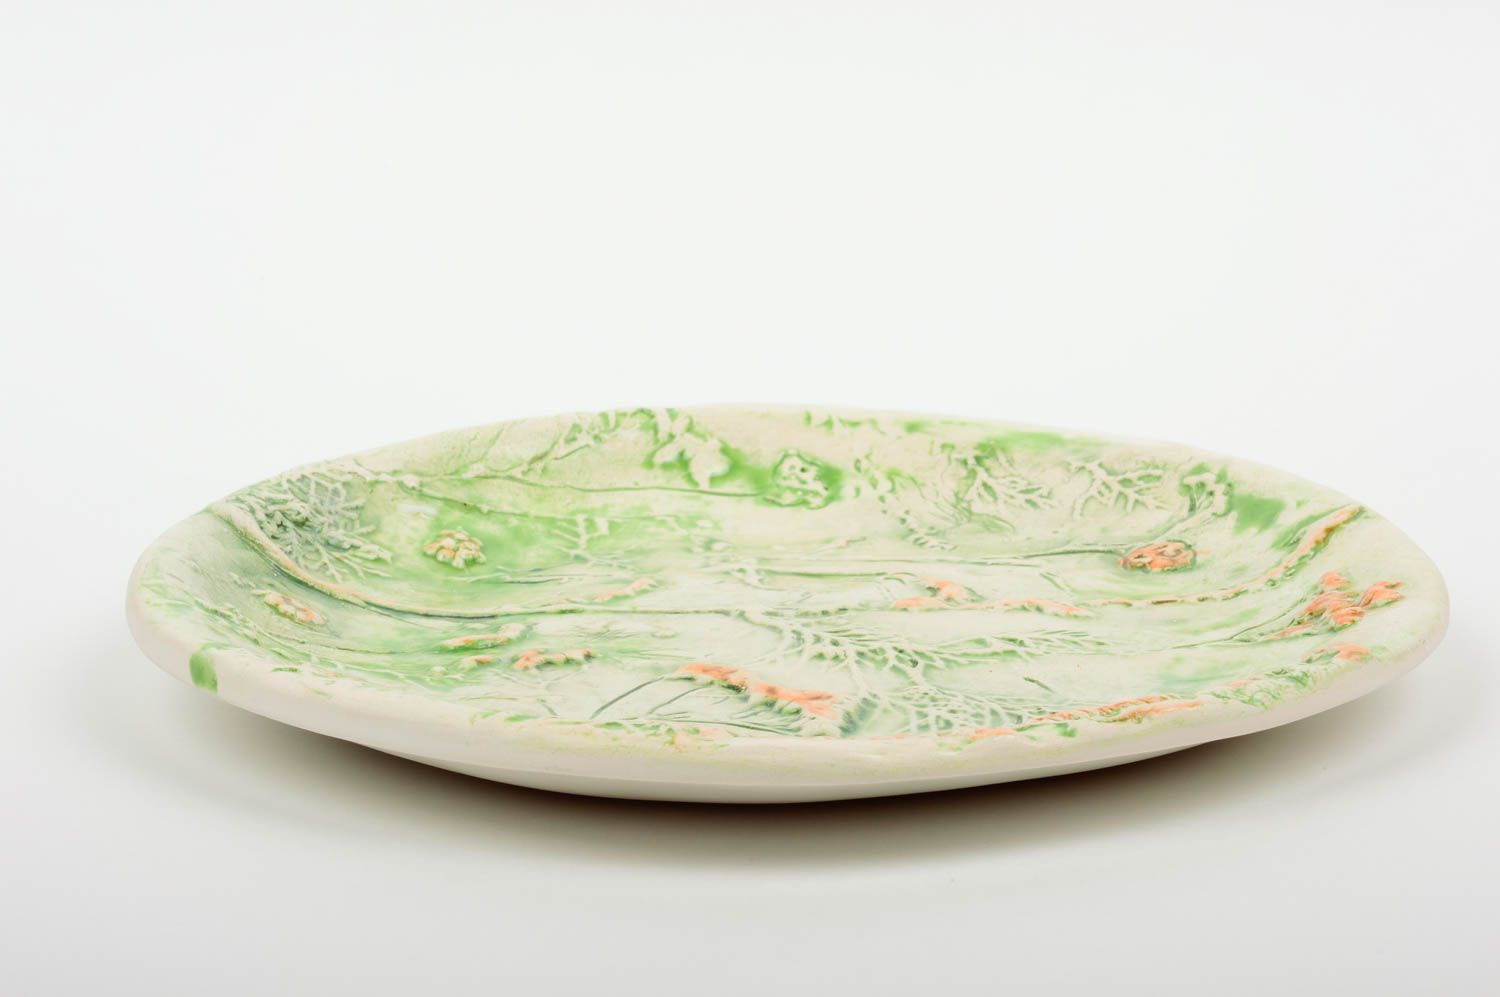 Оригинальная керамическая тарелка с рельефным рисунком из глины для подачи блюд фото 2